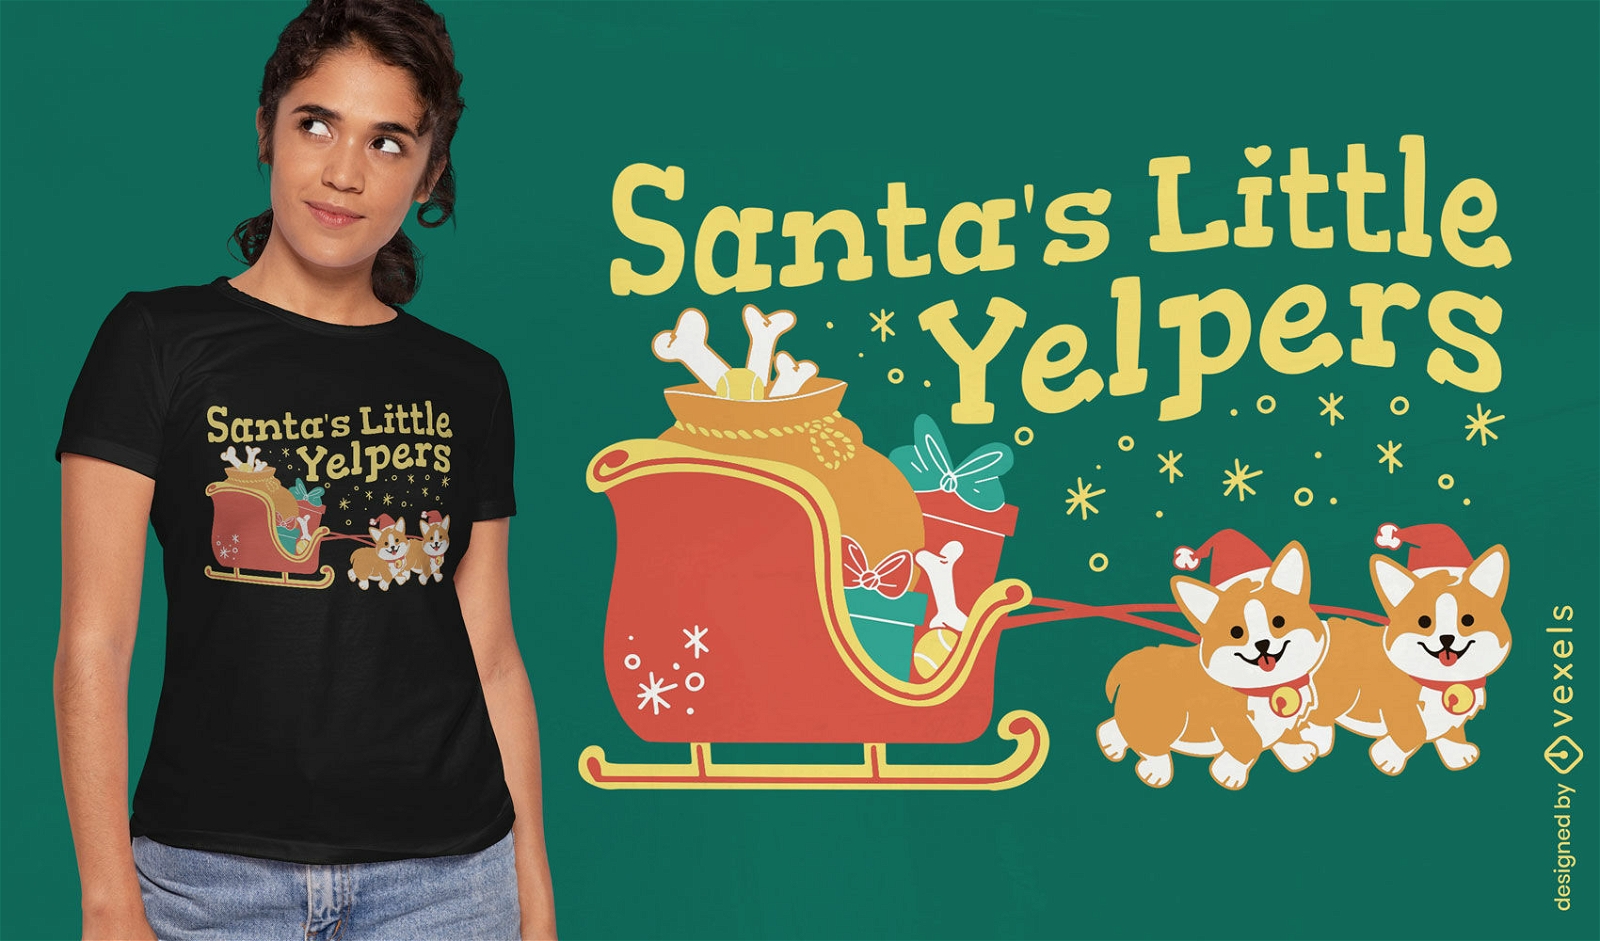 Christmas corgis t-shirt design